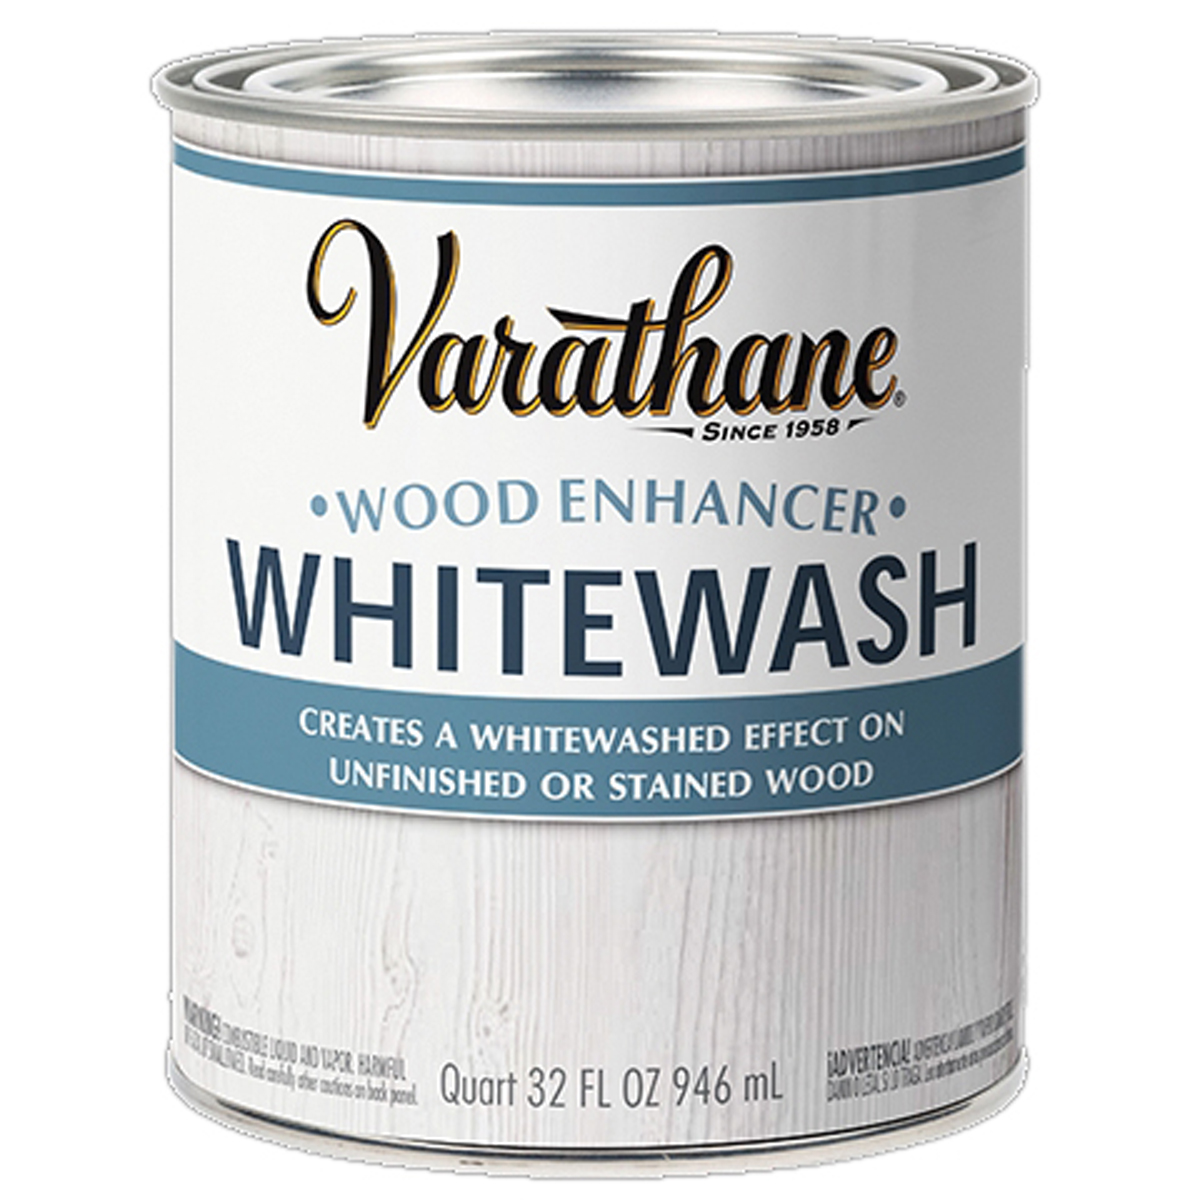 358553 Whitewash Stain, Whitewash, Liquid, 1 qt